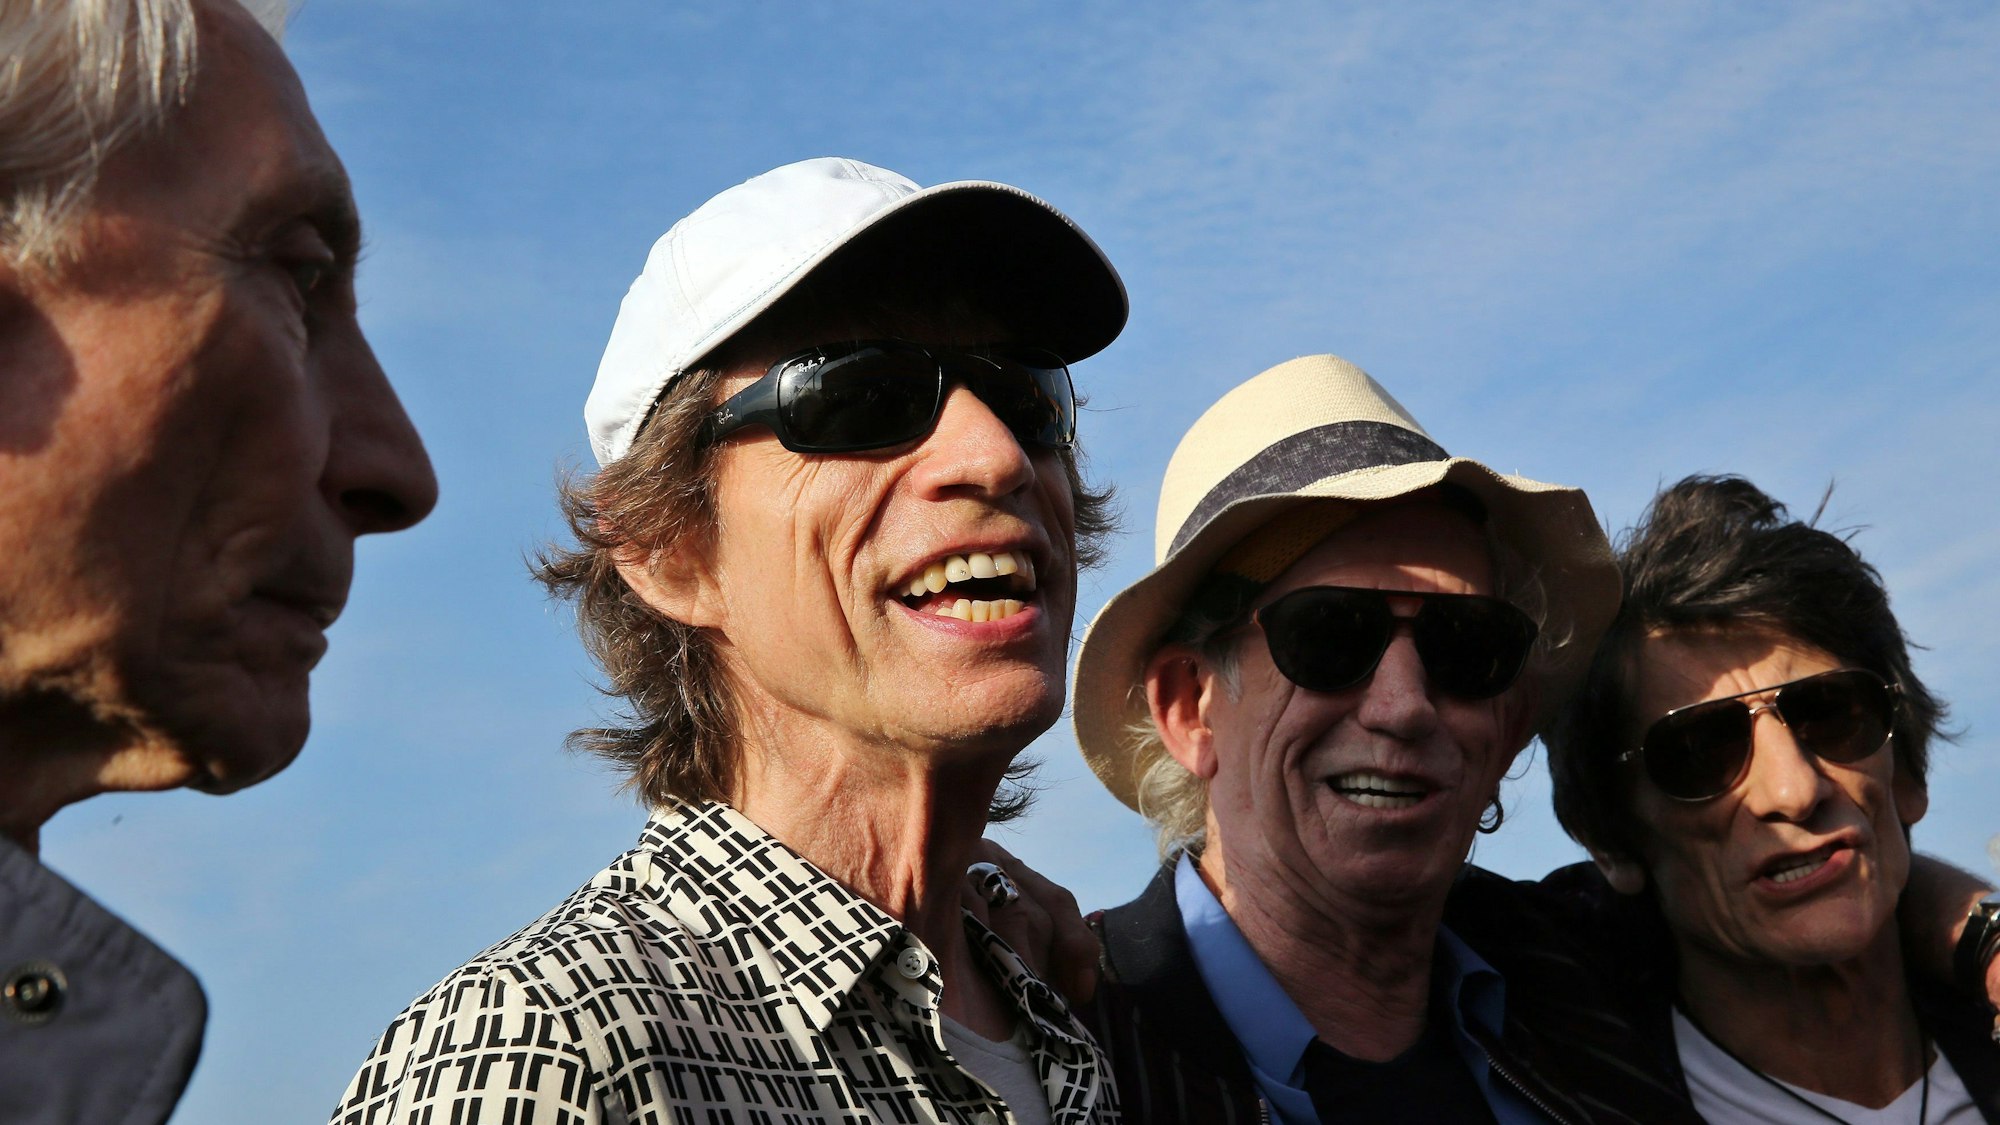 ARCHIV - 24.03.2016, Kuba, Havanna: Die Rolling Stones mit Charlie Watts (l-r), Mick Jagger, Keith Richards und Ronnie Wood bei ihrer Ankunft. Mick Jagger, Frontman der Rolling Stones, feiert am 26. Juli 2023 seinen 80. Geburtstag. (zu dpa: «Rolling-Stones-Sänger und ewige Rockikone: Mick Jagger wird 80») Foto: Alejandro Ernesto/efe/dpa +++ dpa-Bildfunk +++